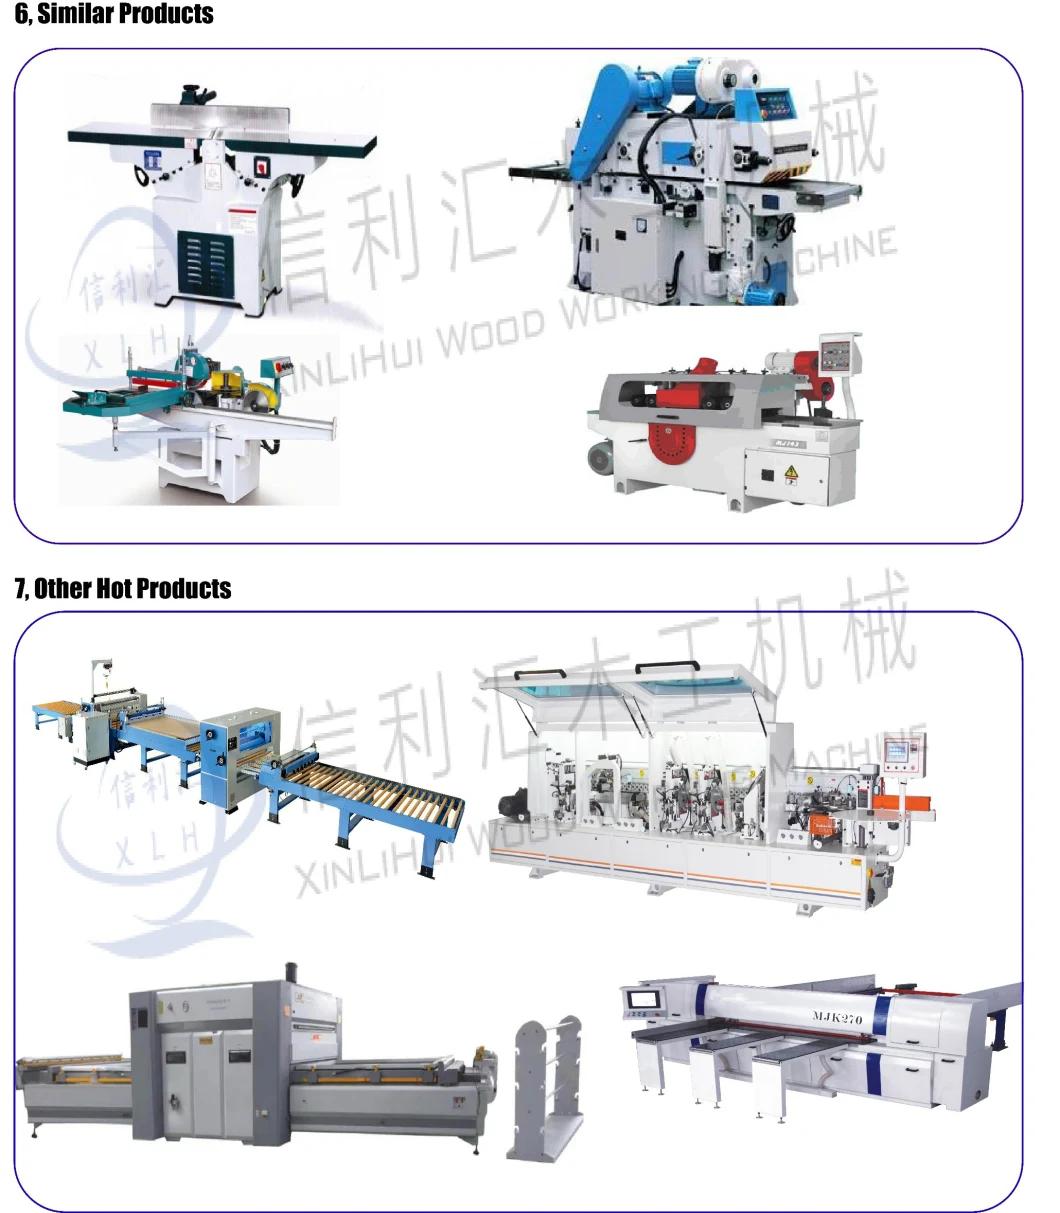 Combination Machine Multi Machine, Combination Wood Working Machine Combination Planning Machine Combine Machine a Bois